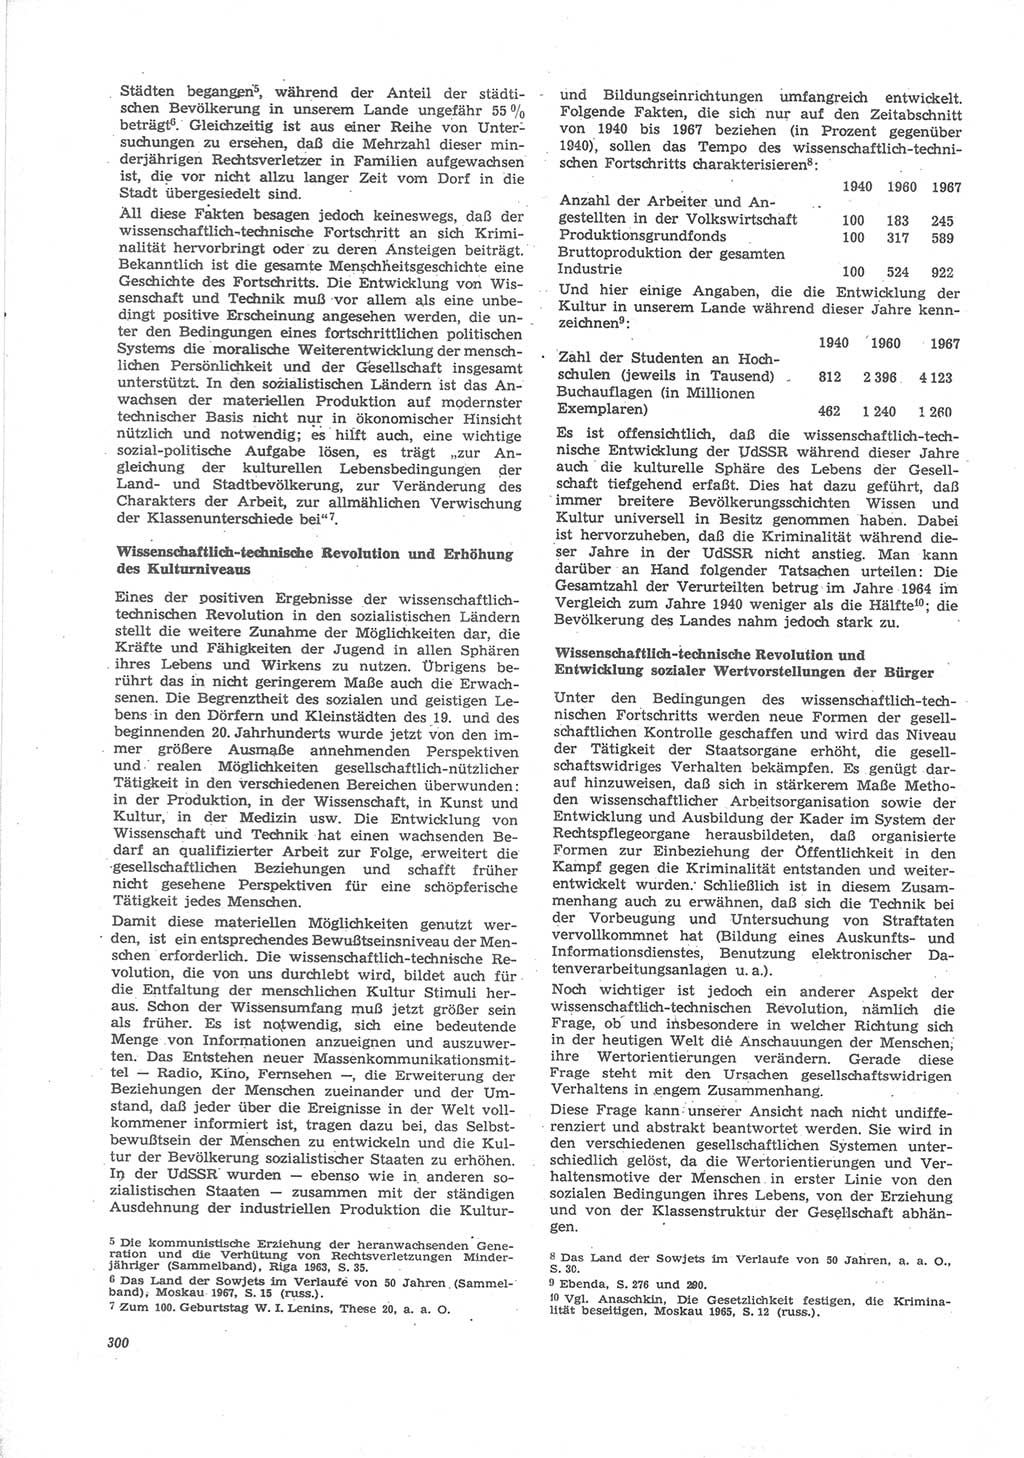 Neue Justiz (NJ), Zeitschrift für Recht und Rechtswissenschaft [Deutsche Demokratische Republik (DDR)], 24. Jahrgang 1970, Seite 300 (NJ DDR 1970, S. 300)